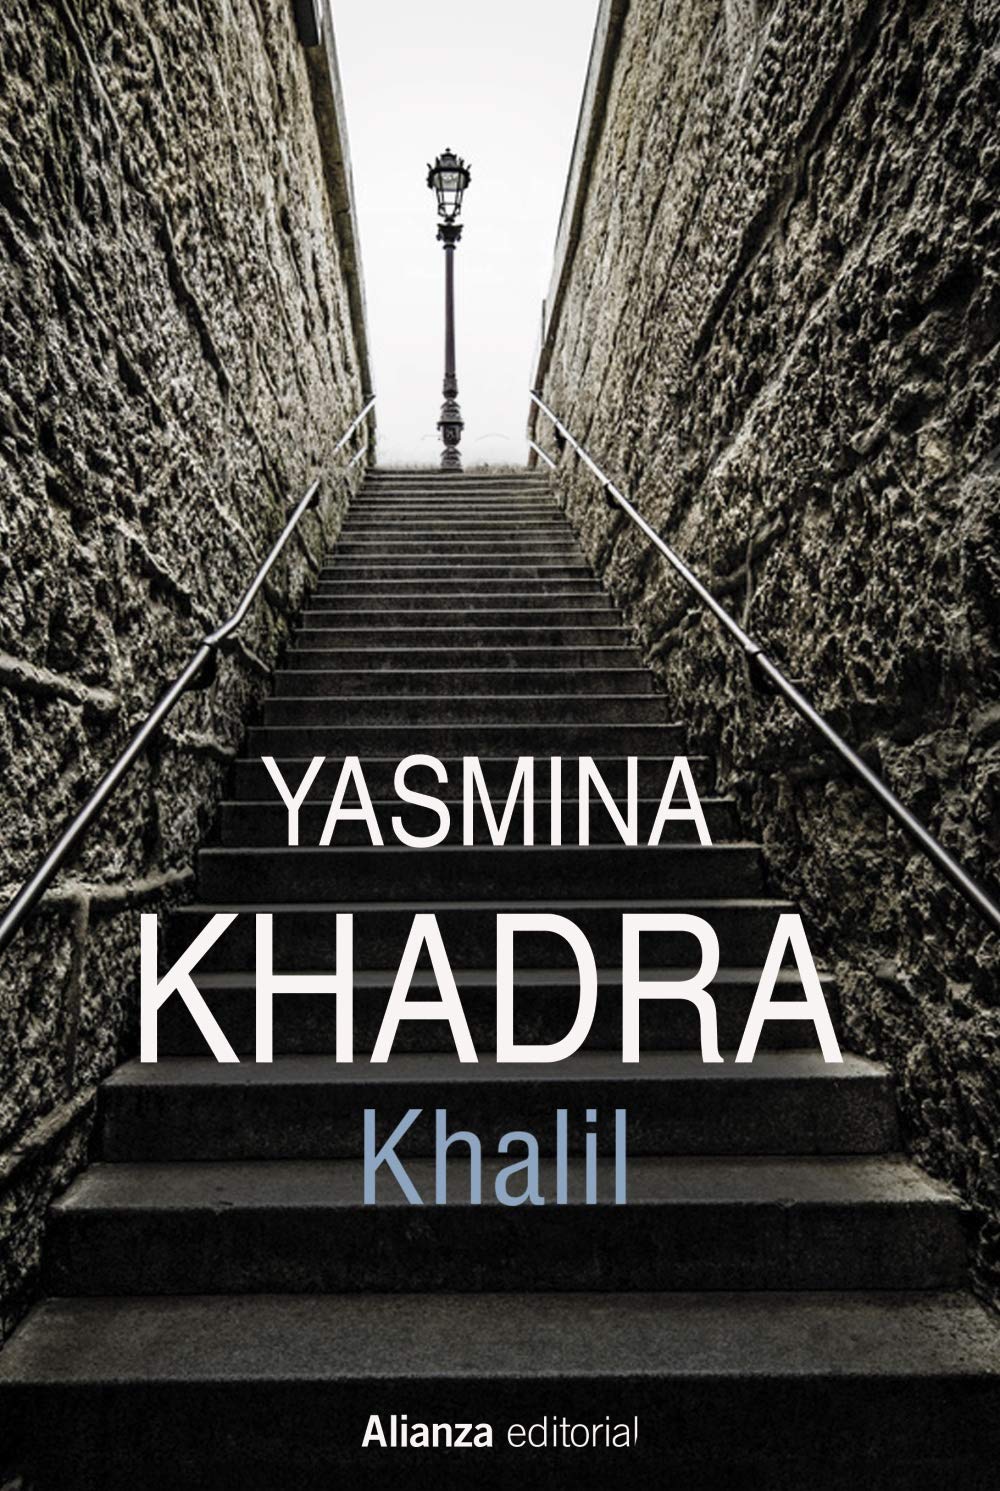 Khalil, de Yasmina Khadra